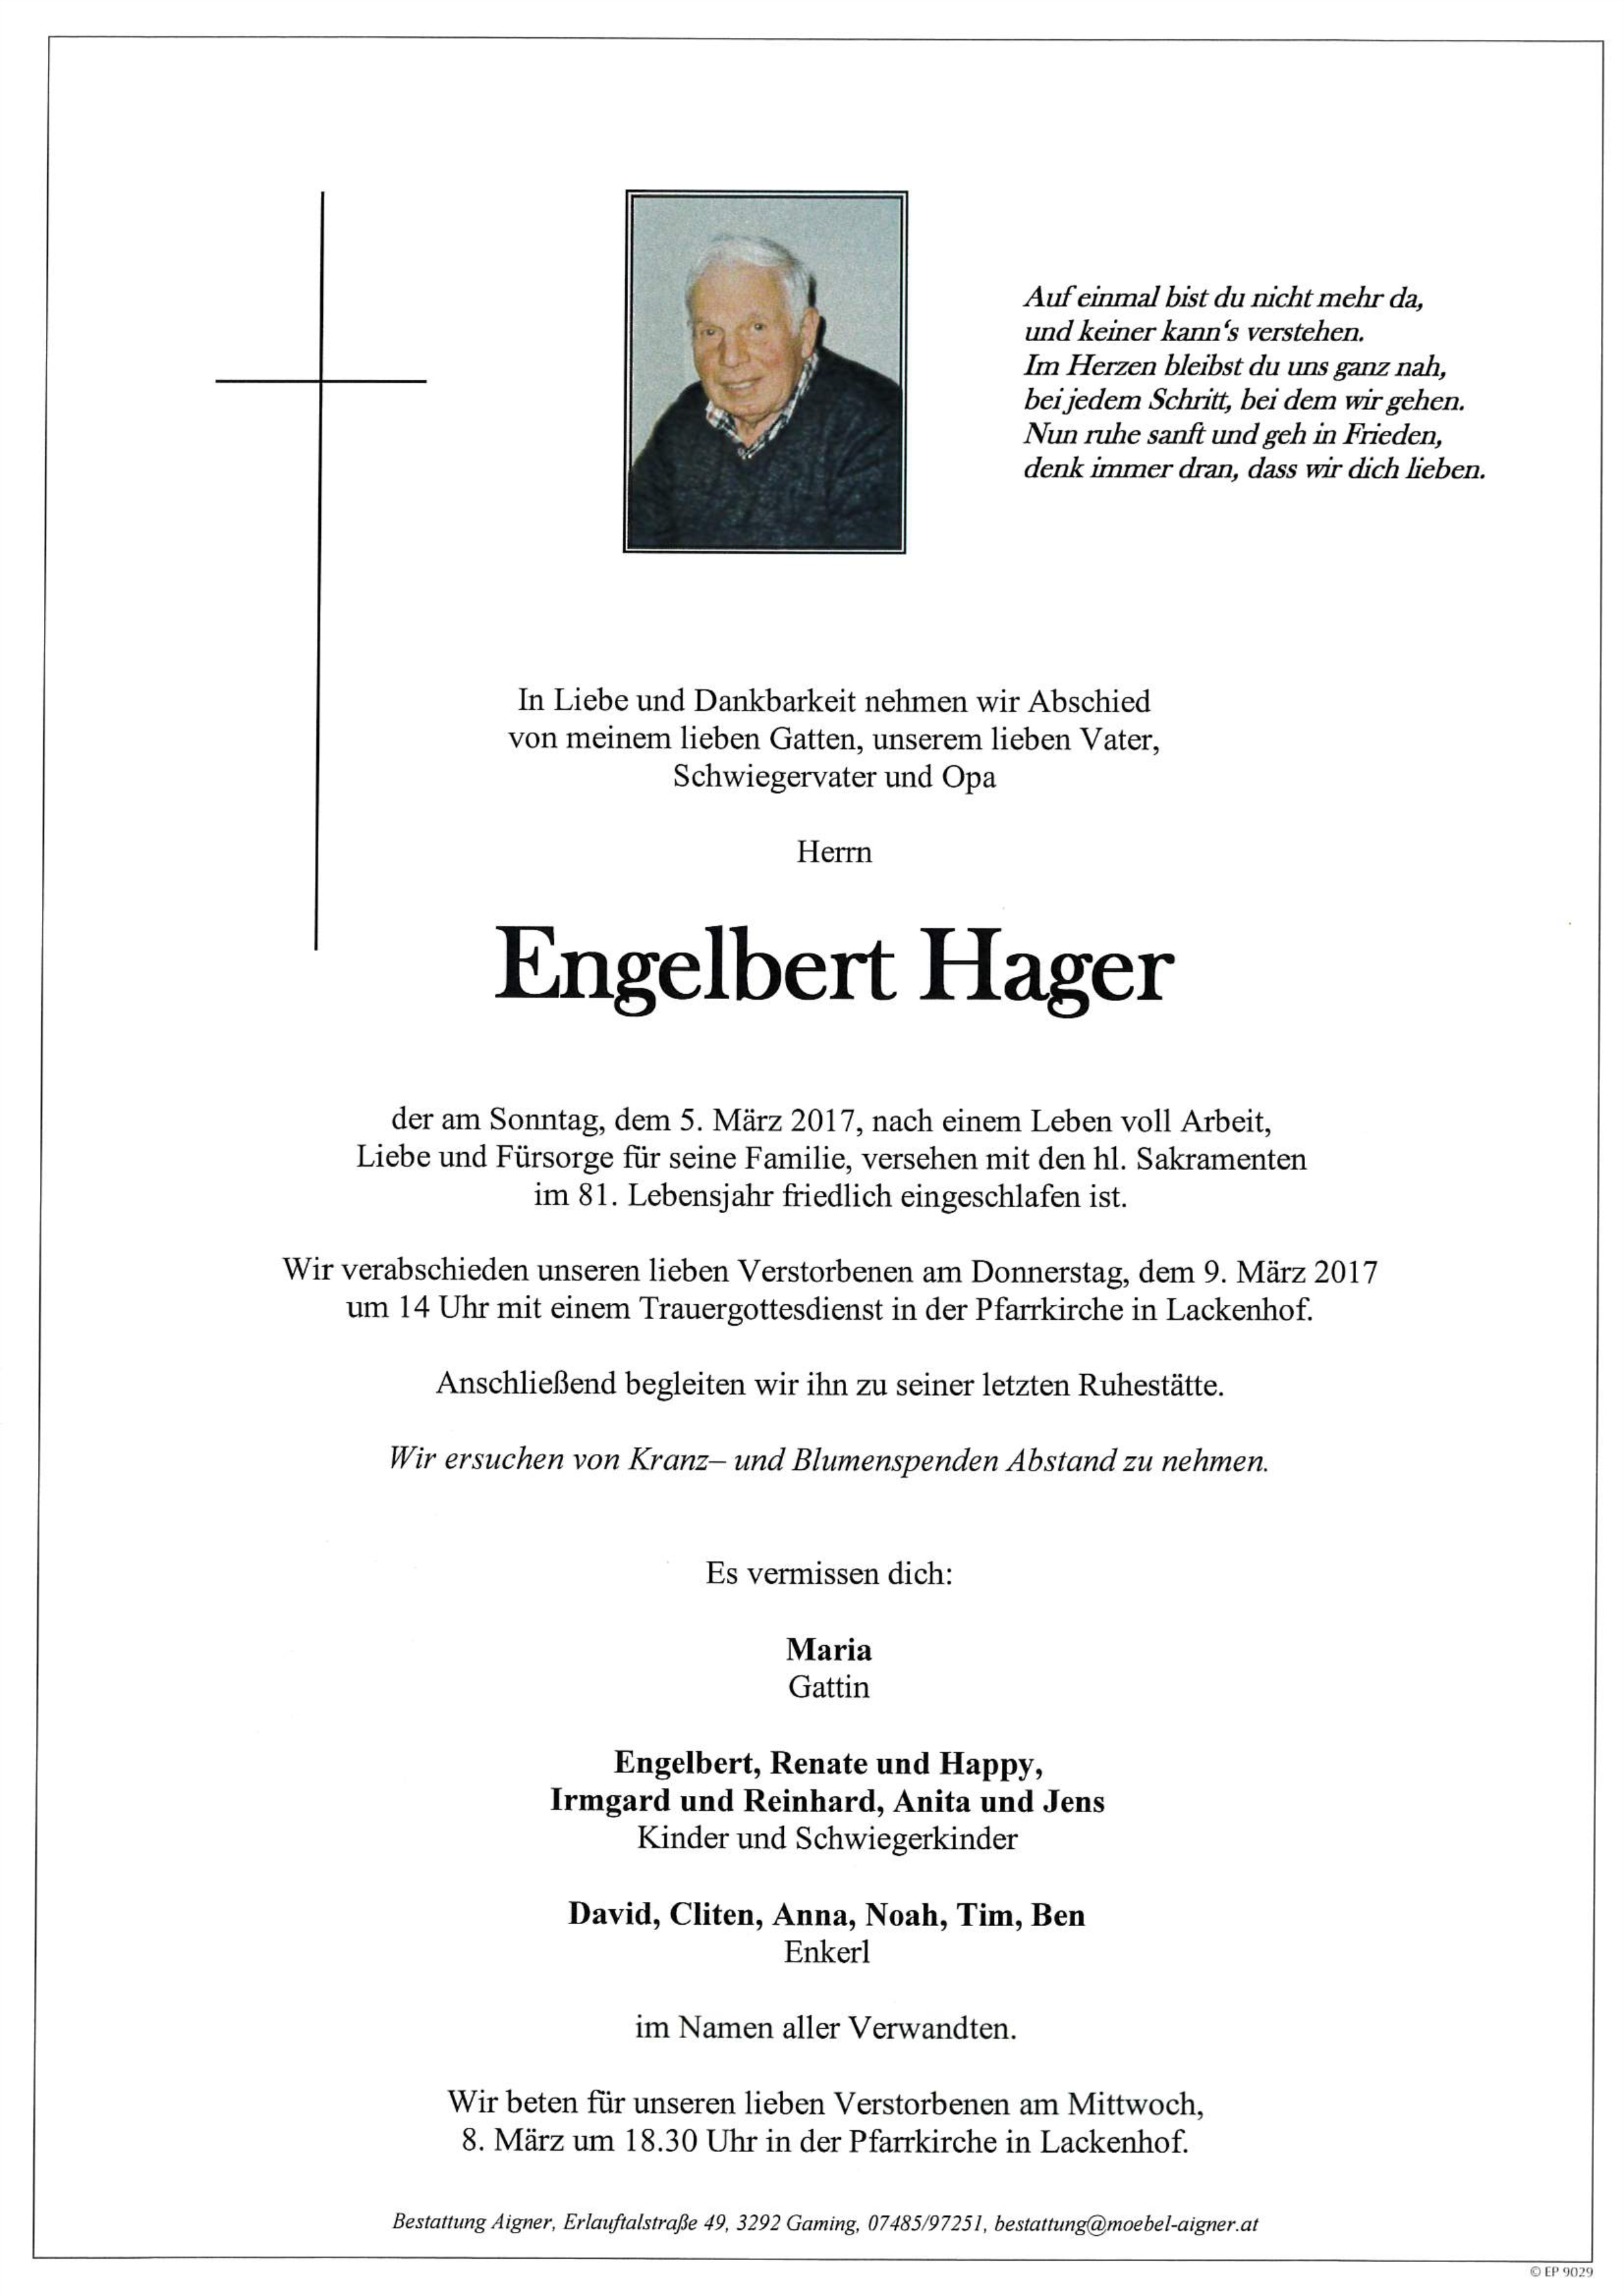 Engelbert Hager